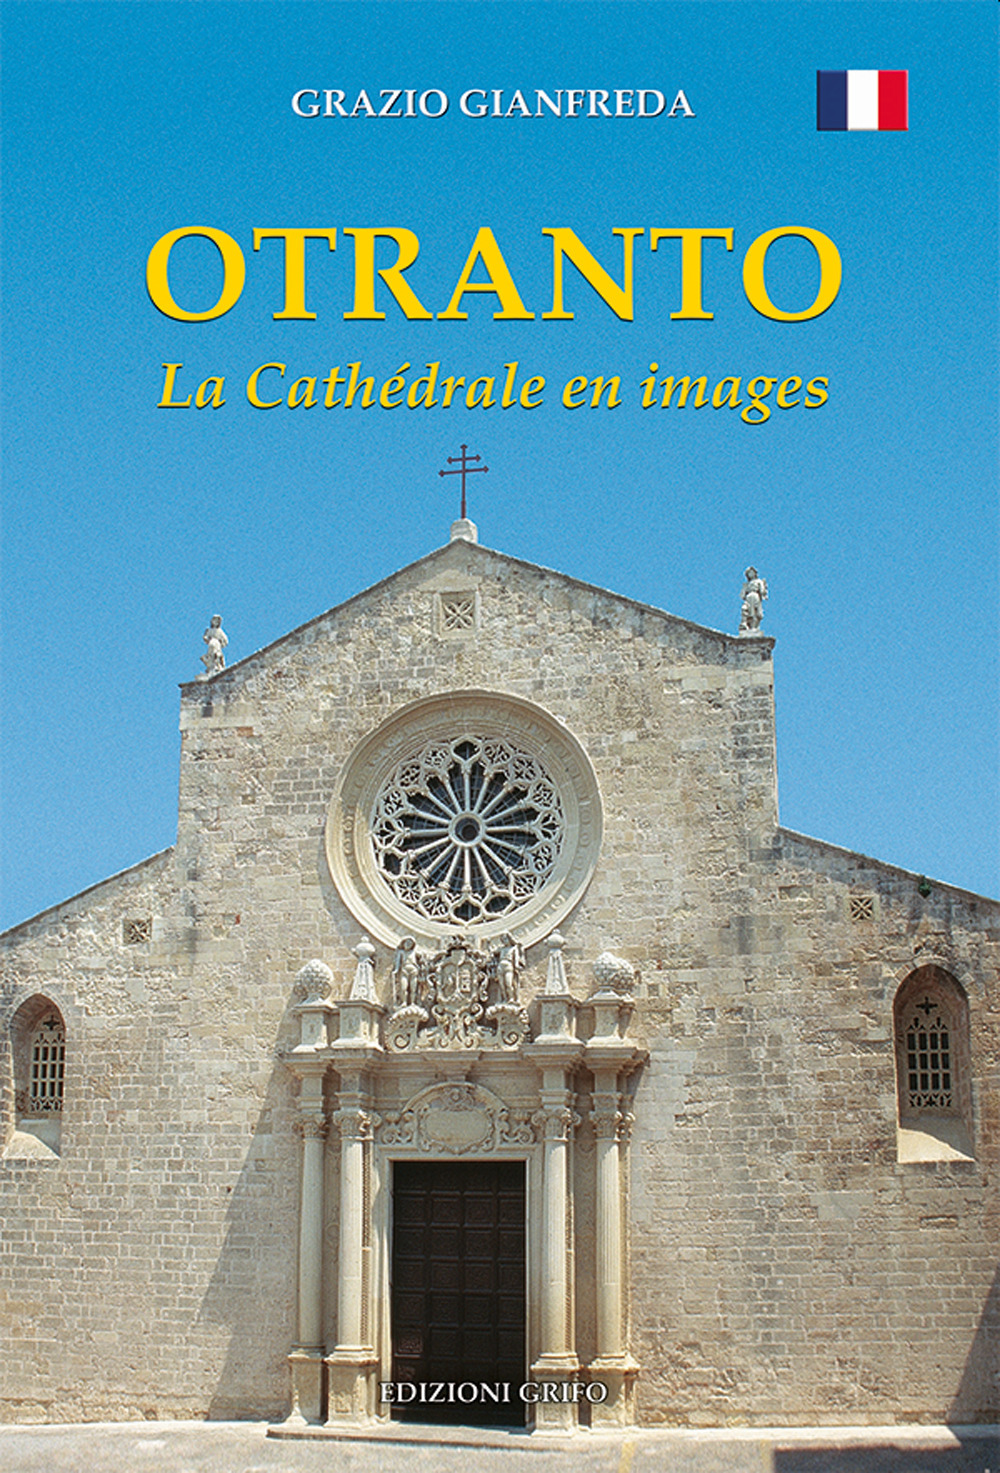 Otranto. La Cathédrale en images